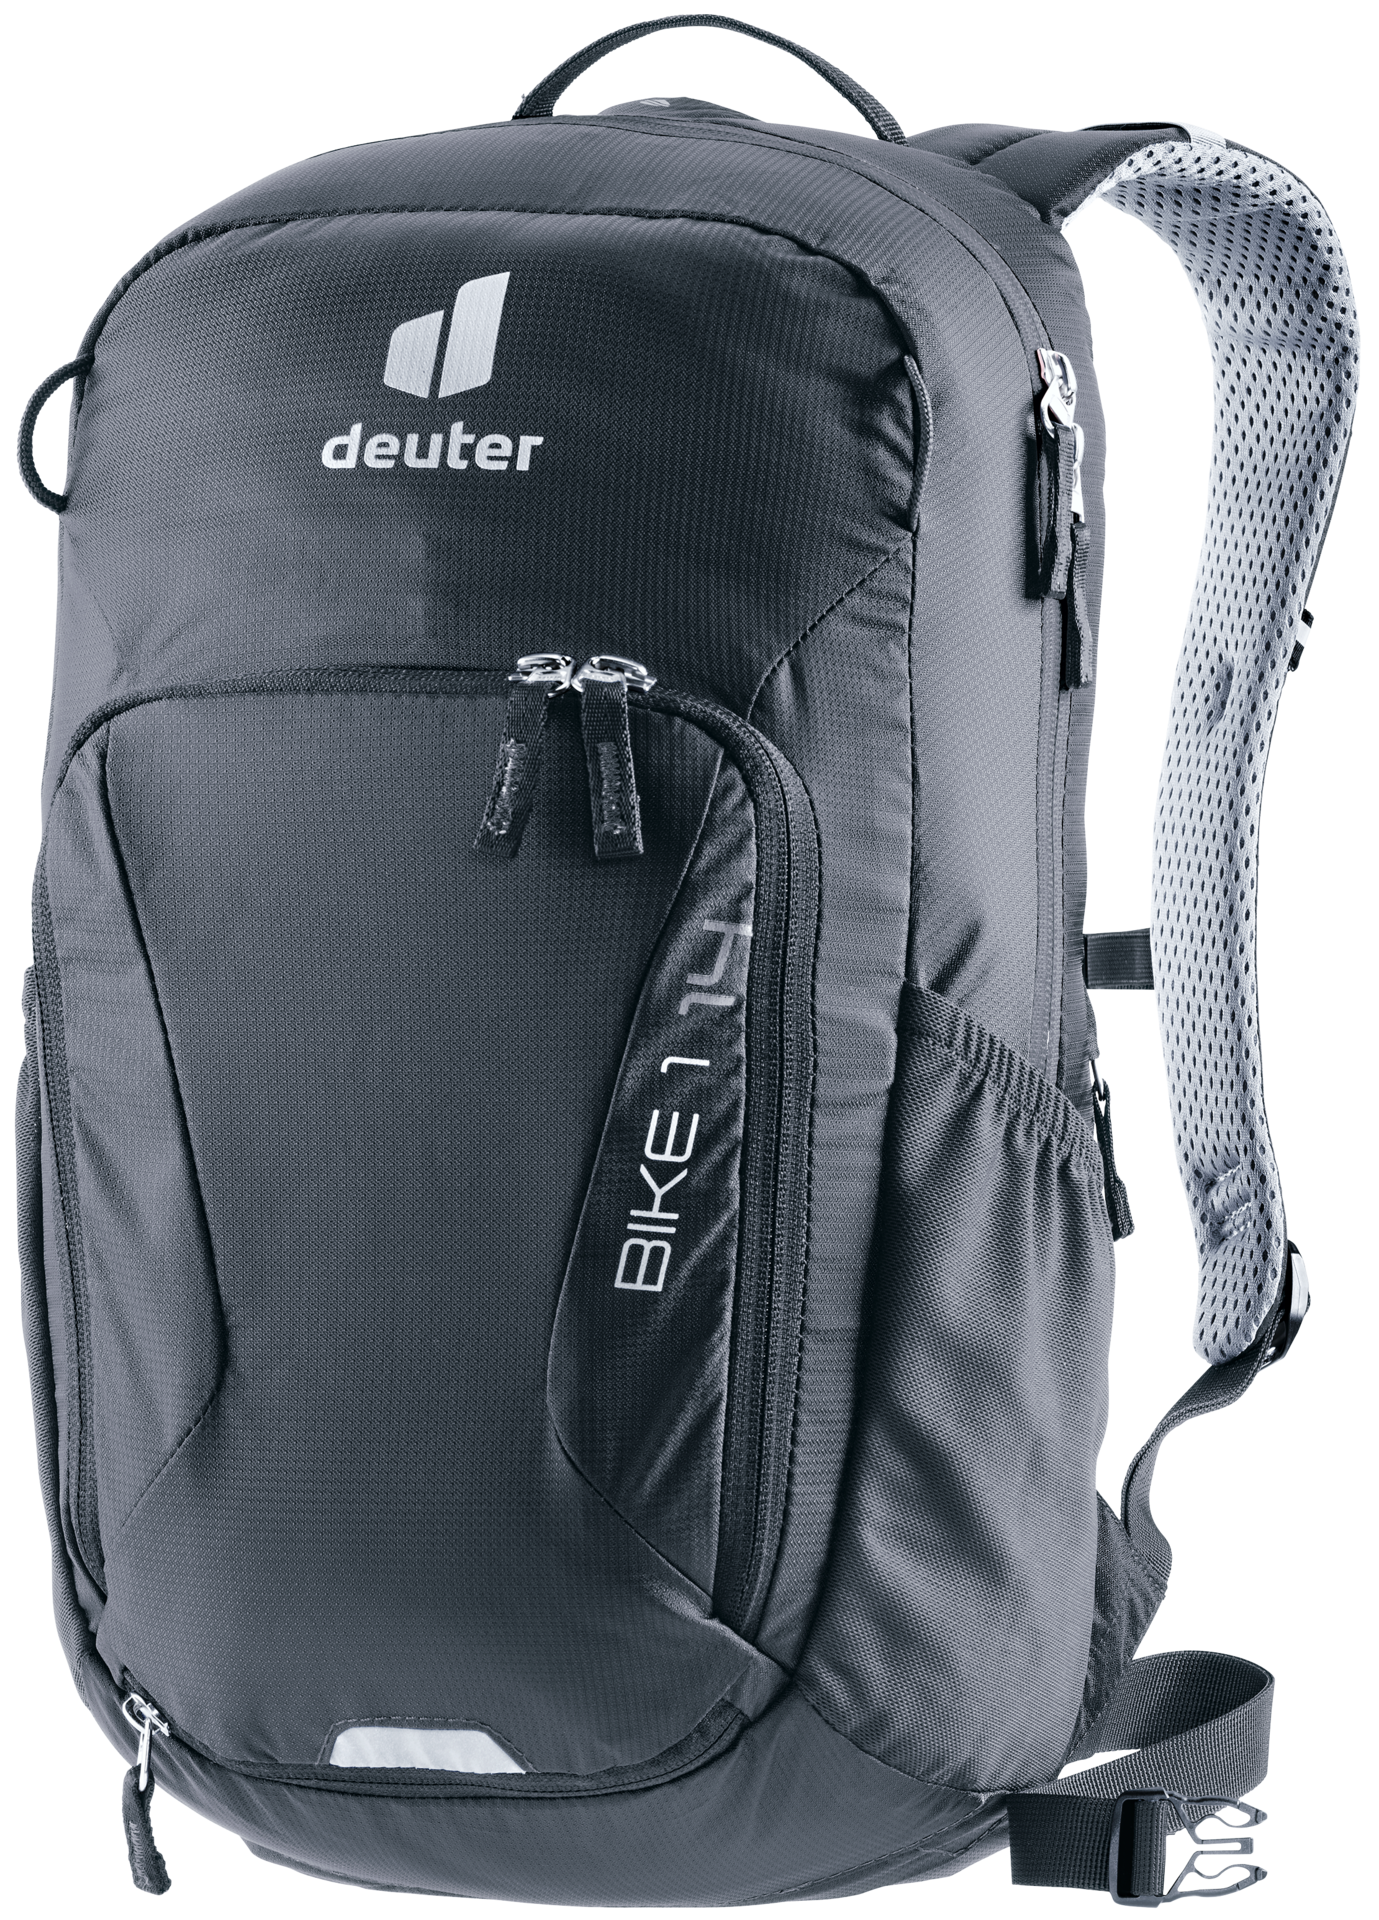 deuter Bike I 14 | Bike backpack